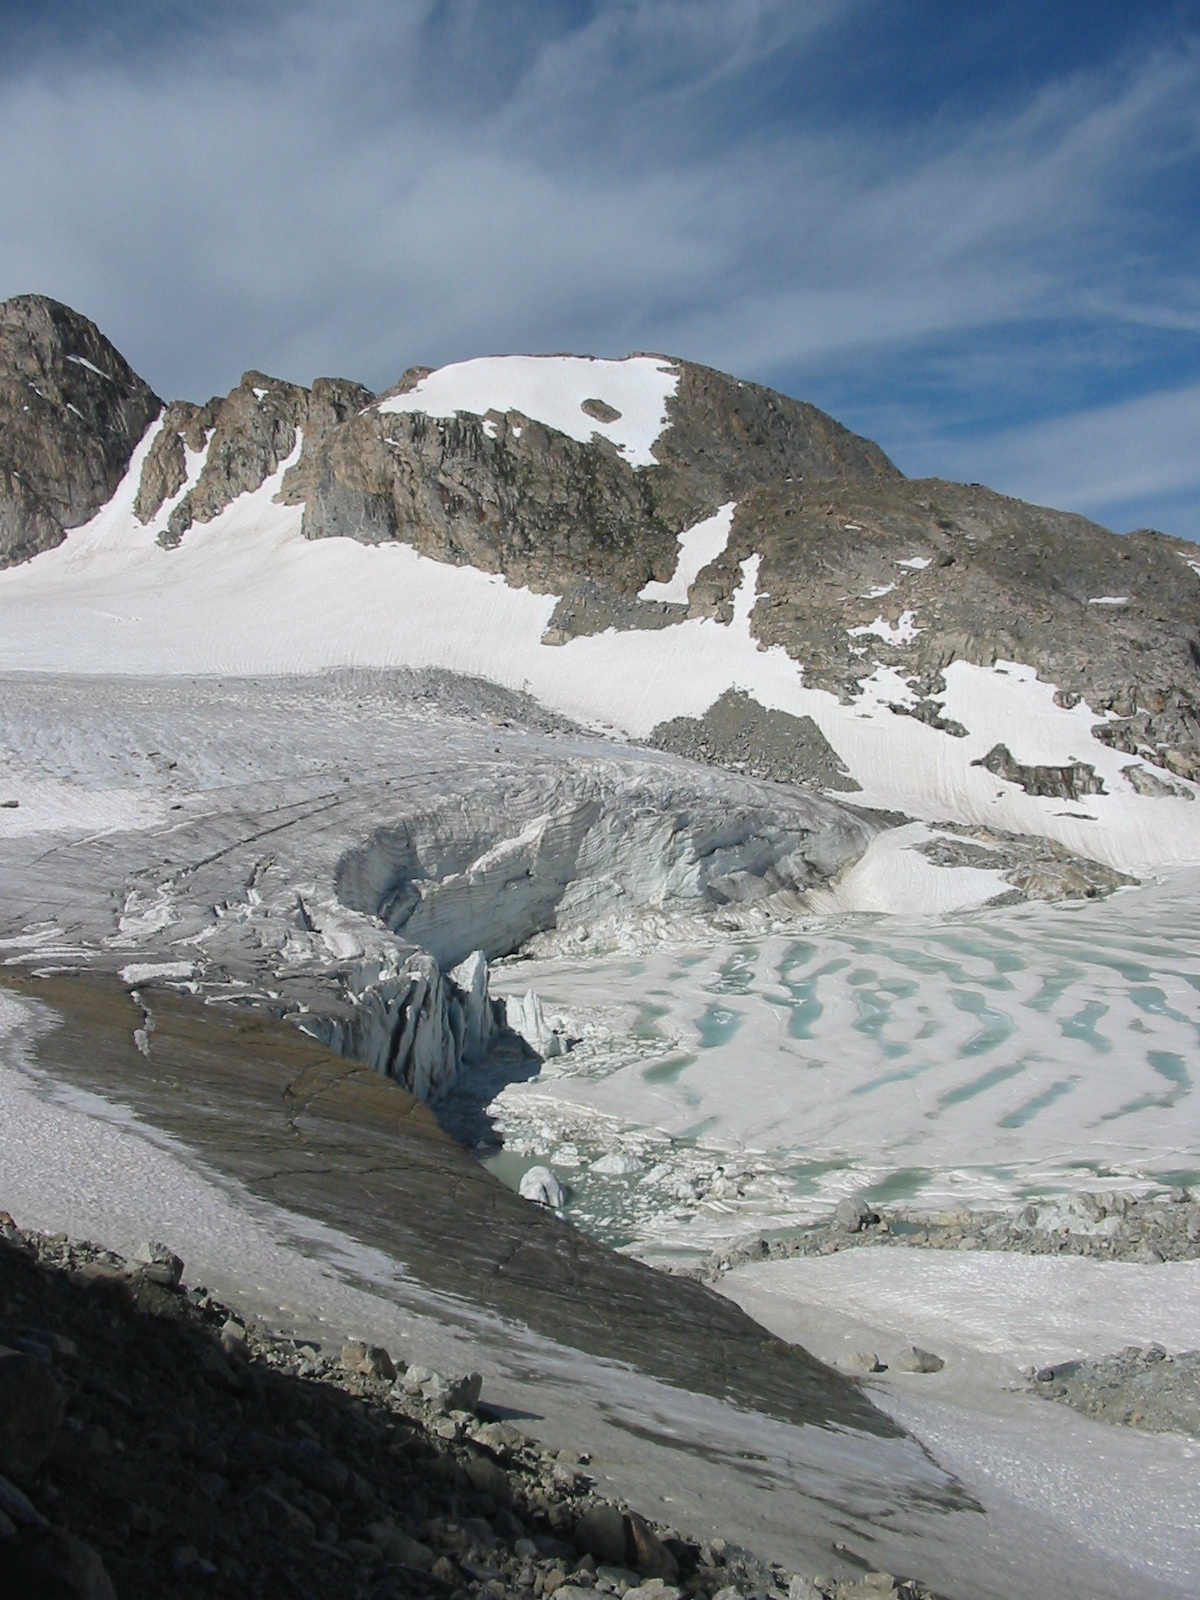 Ice cliffs of Sourdough Glacier